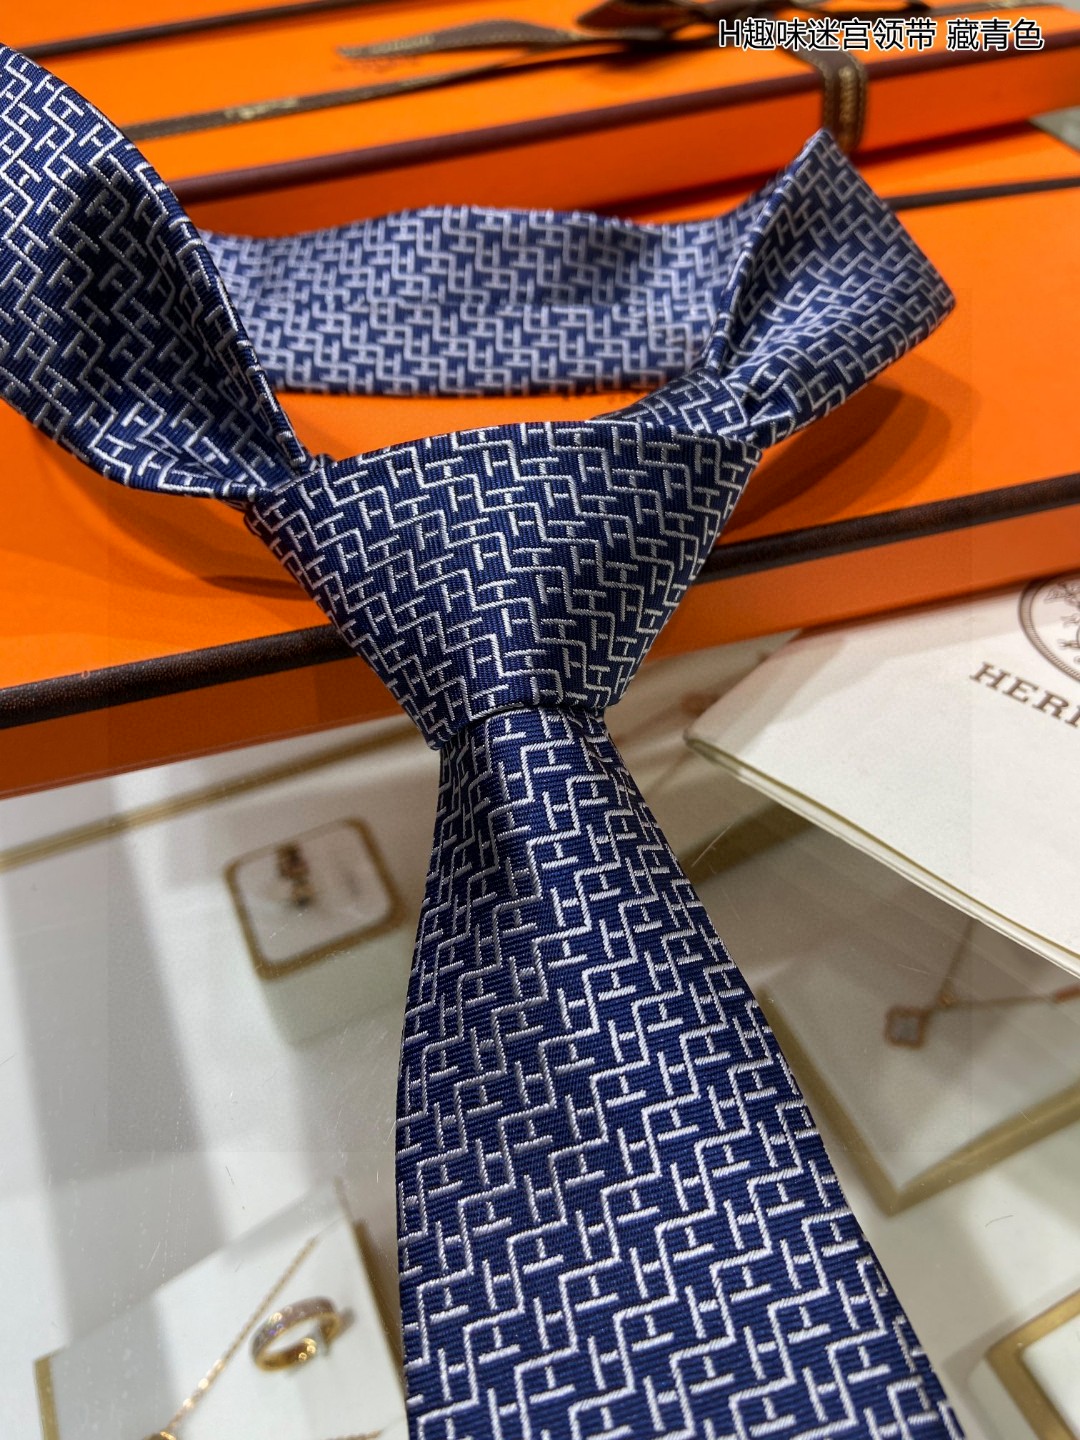 特价男士新款领带系列H趣味迷宫领带稀有H家每年都有一千条不同印花的领带面世从最初的多以几何图案表现骑术活